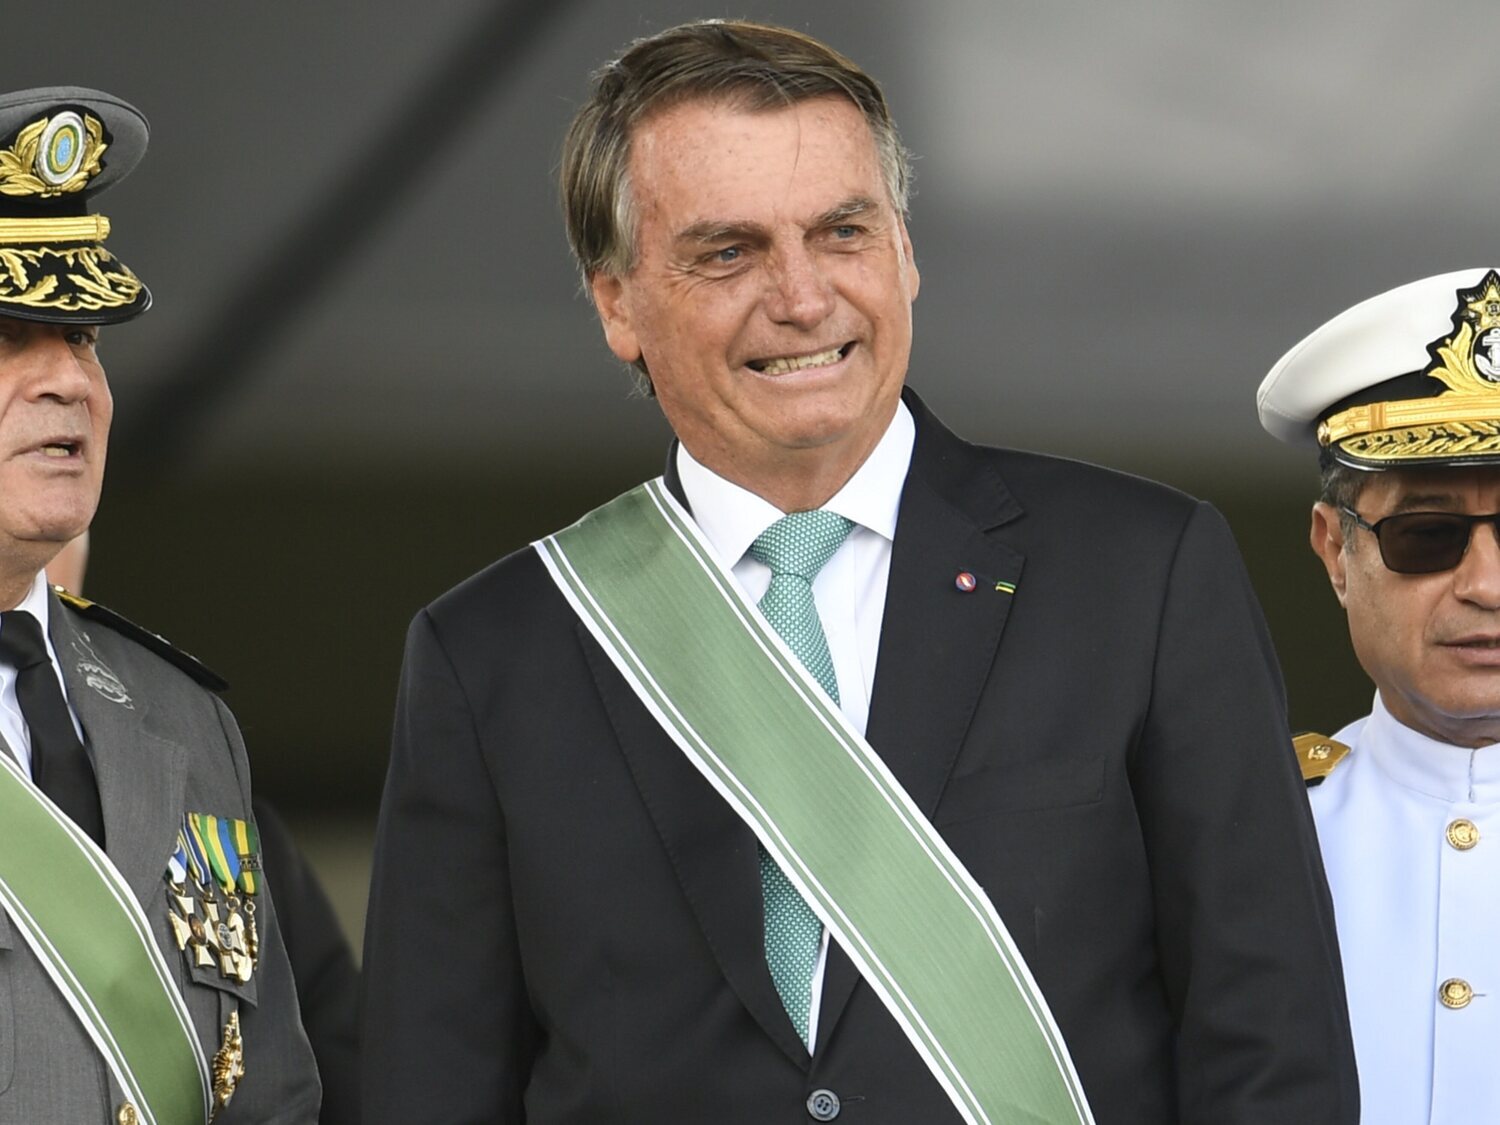 Bolsonaro pone en duda el sistema electoral y se queja de que le provoquen "ser un dictador"